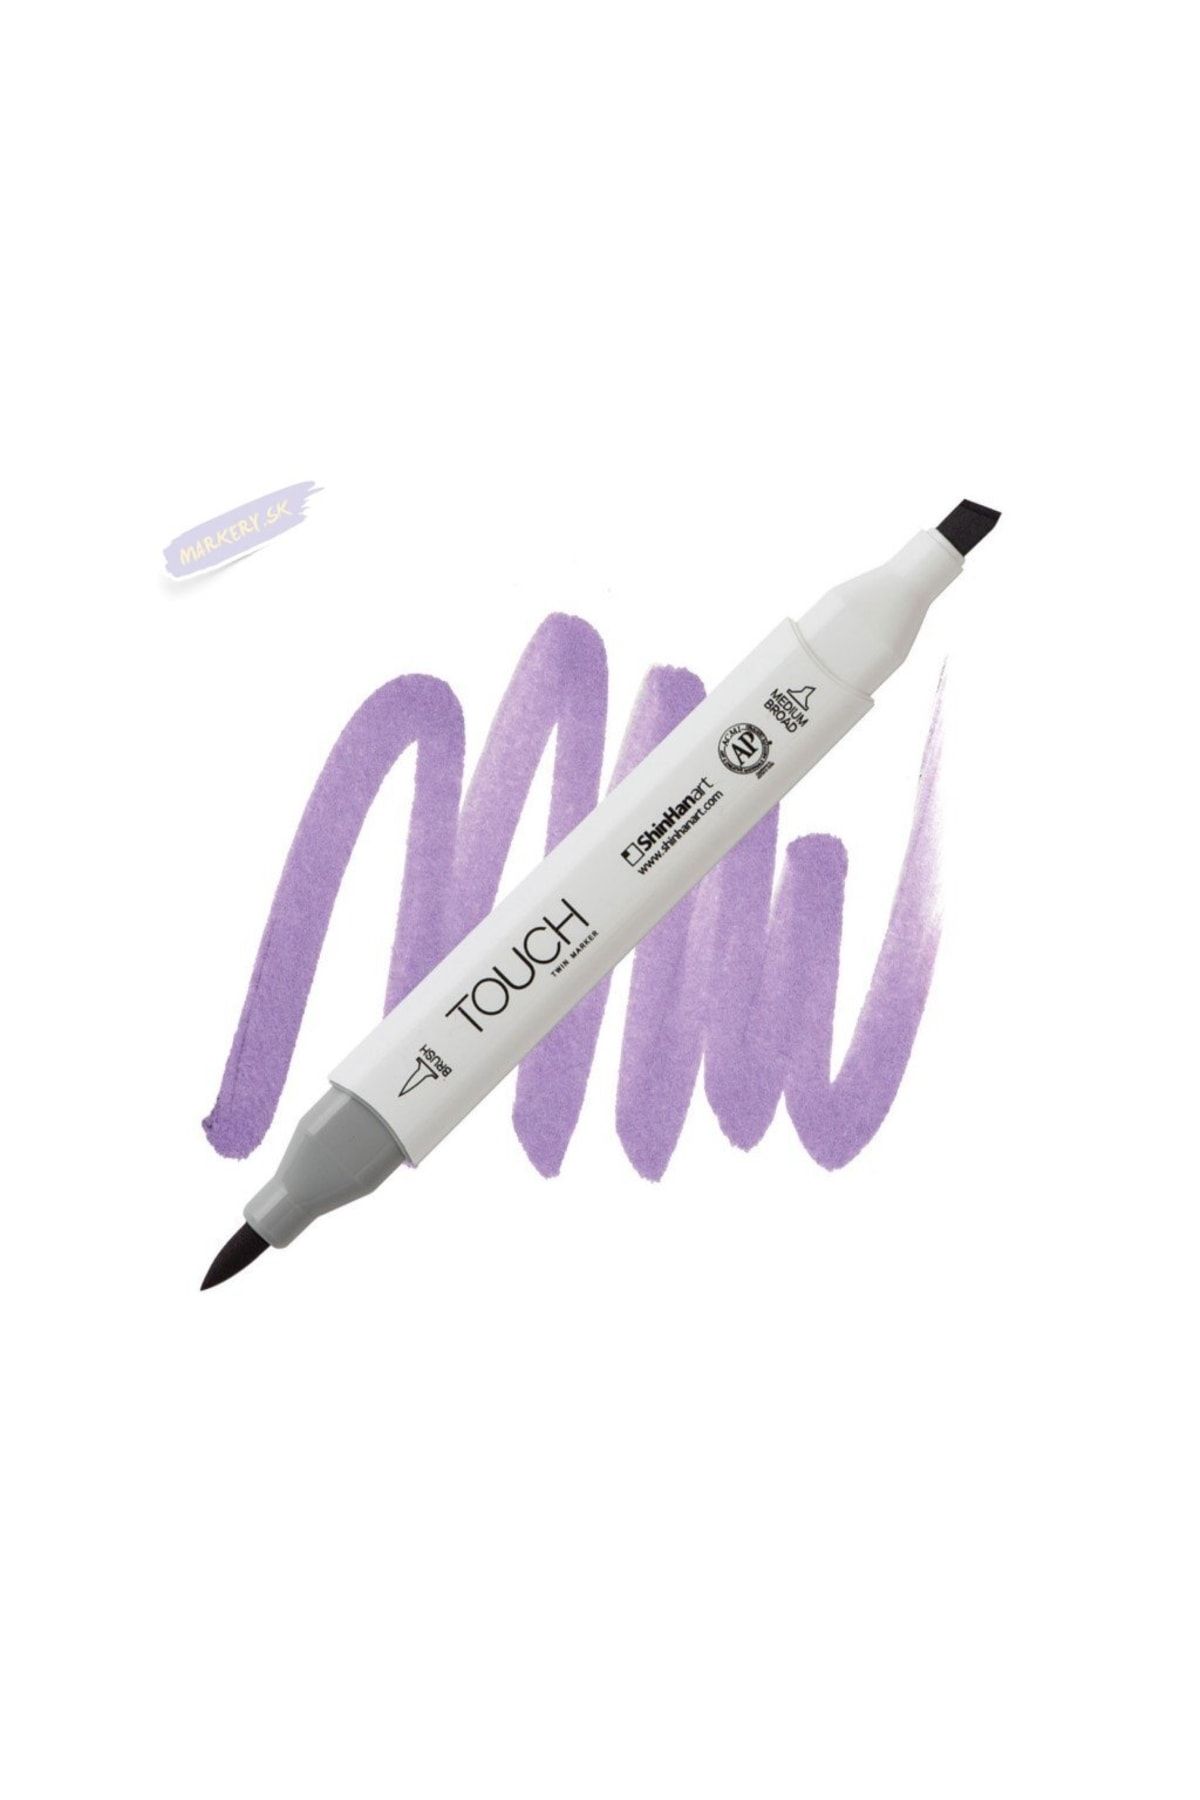 Shinhan Art Touch Twın Brush Pen : Çift Taraflı Marker : P83 Lavender